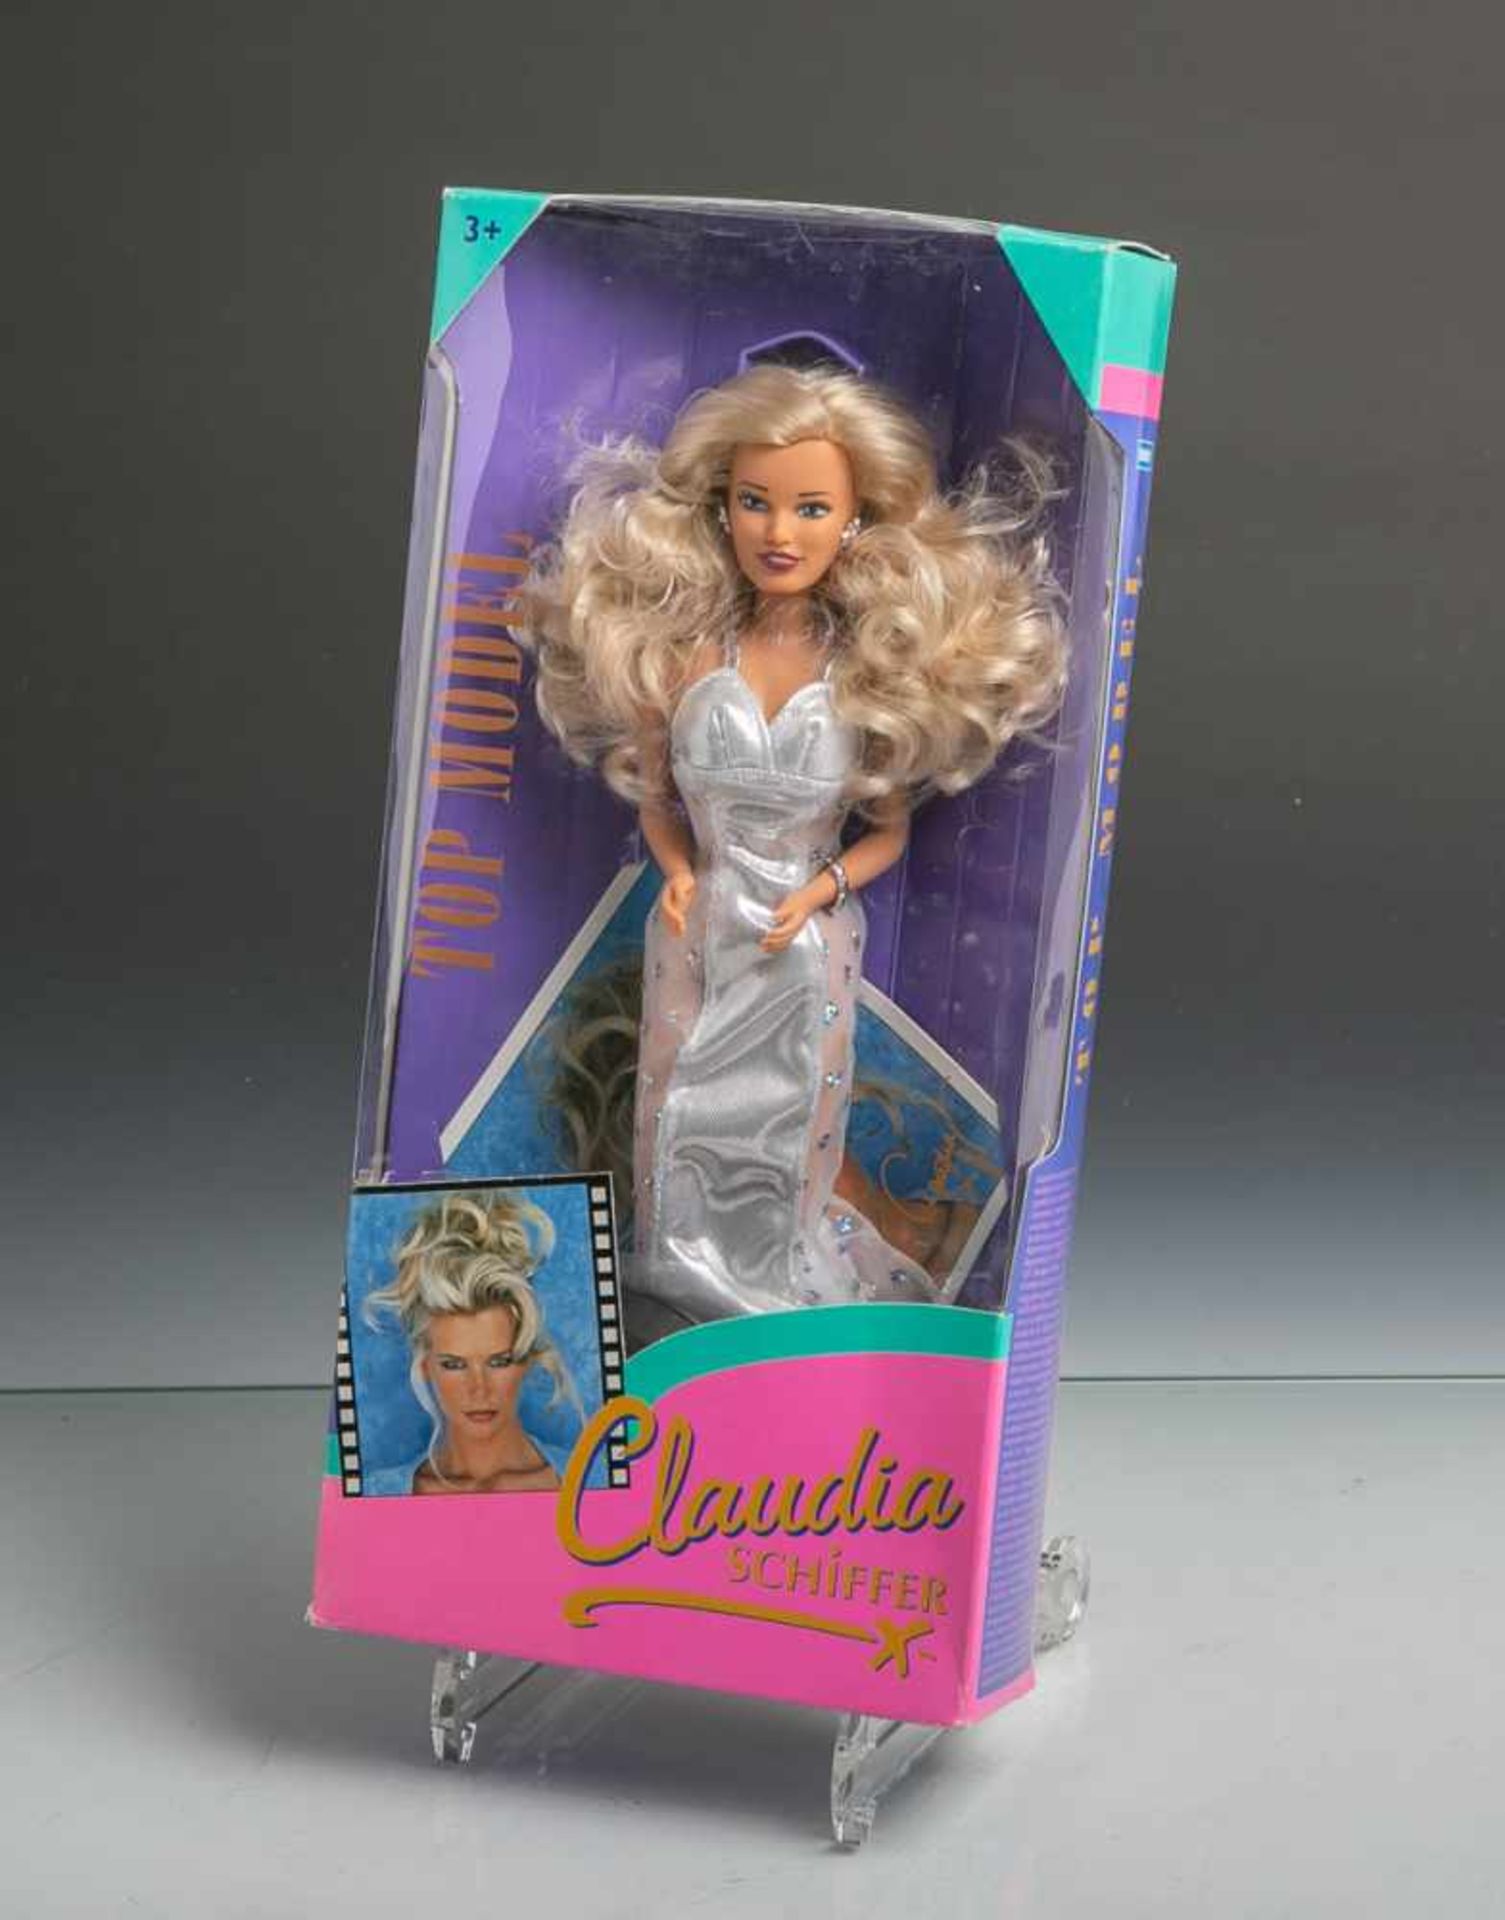 Modelpuppe "Claudia Schiffer" (Hasbro, 1995), Top Model Collection, orig. Zubehör inkl.Infokarte